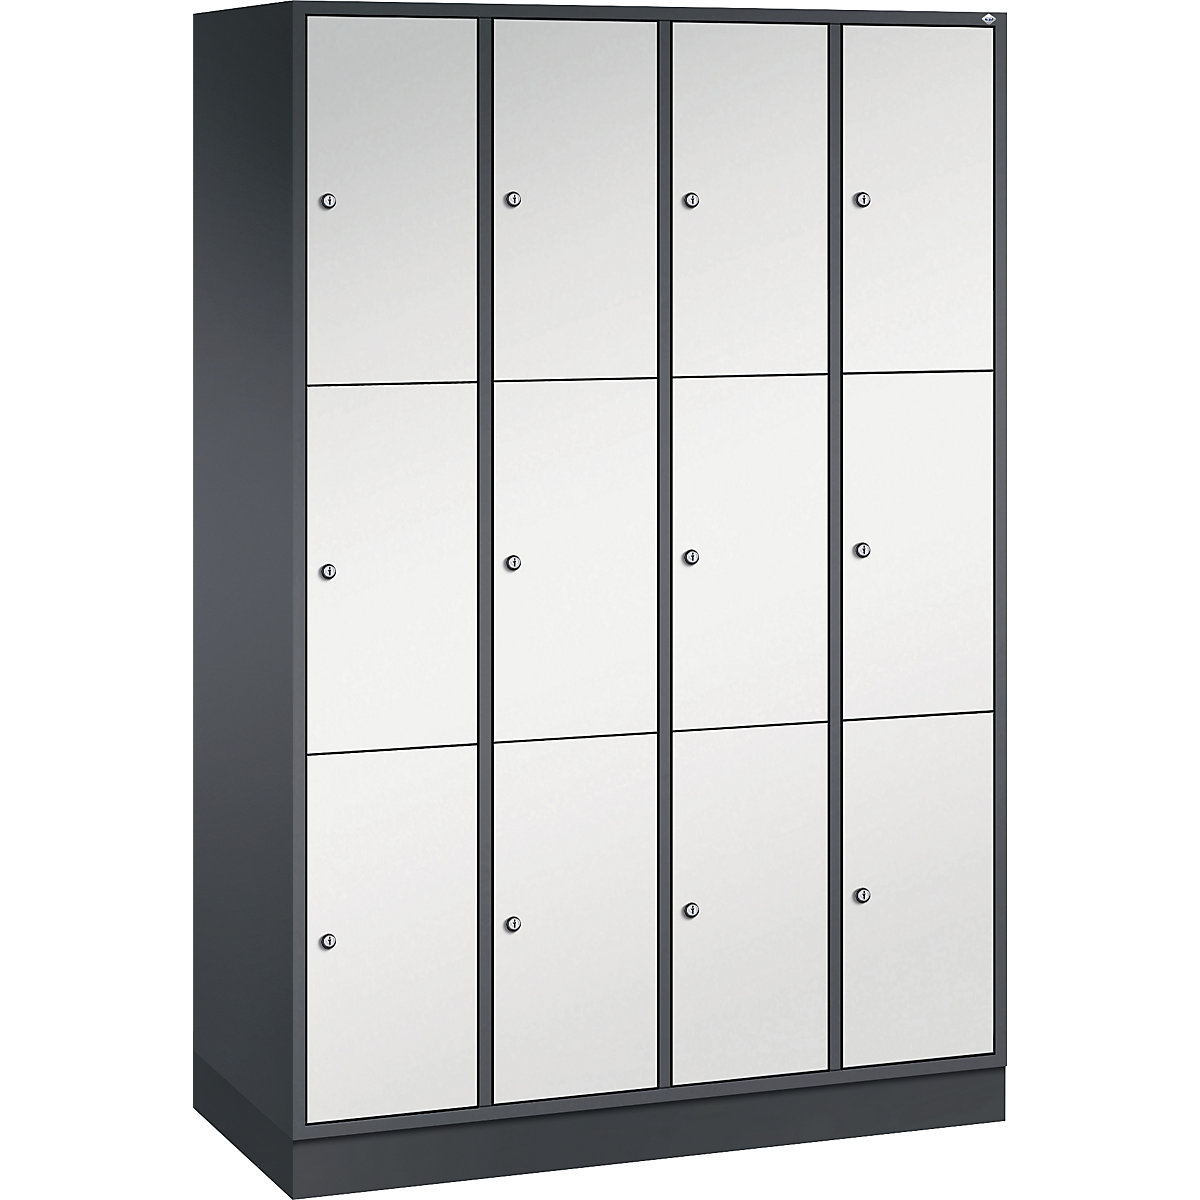 Vestiaire multicases en acier INTRO, casiers hauteur 580 mm – C+P, l x p 1220 x 500 mm, 12 casiers, corps gris noir, portes gris clair-12